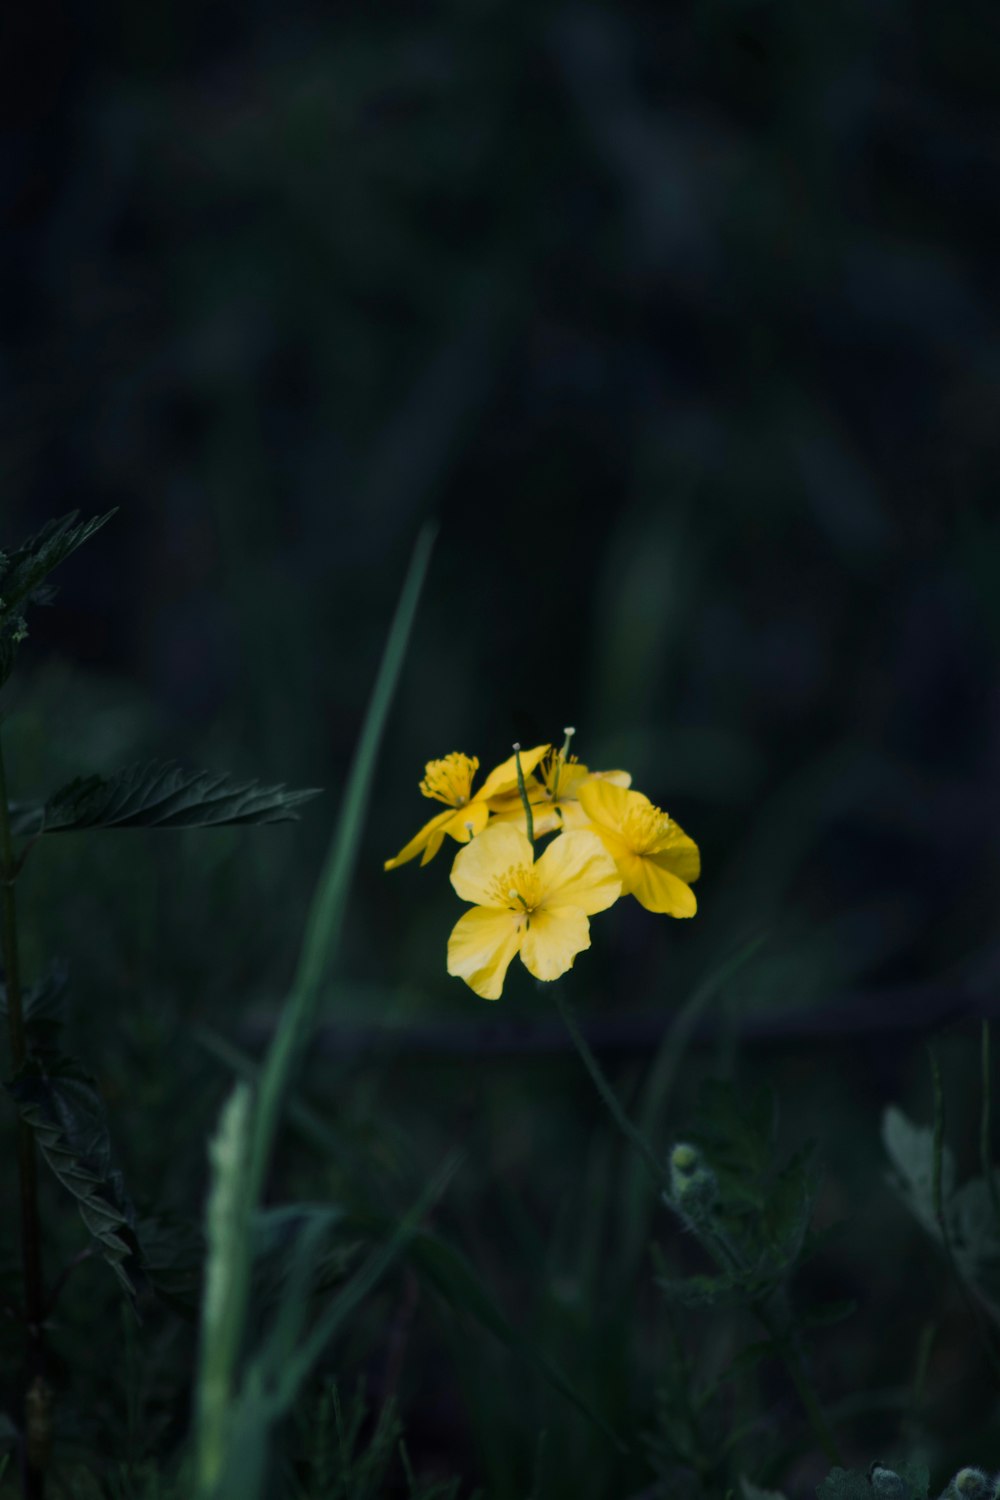 eine einzelne gelbe Blume in einer grasbewachsenen Fläche